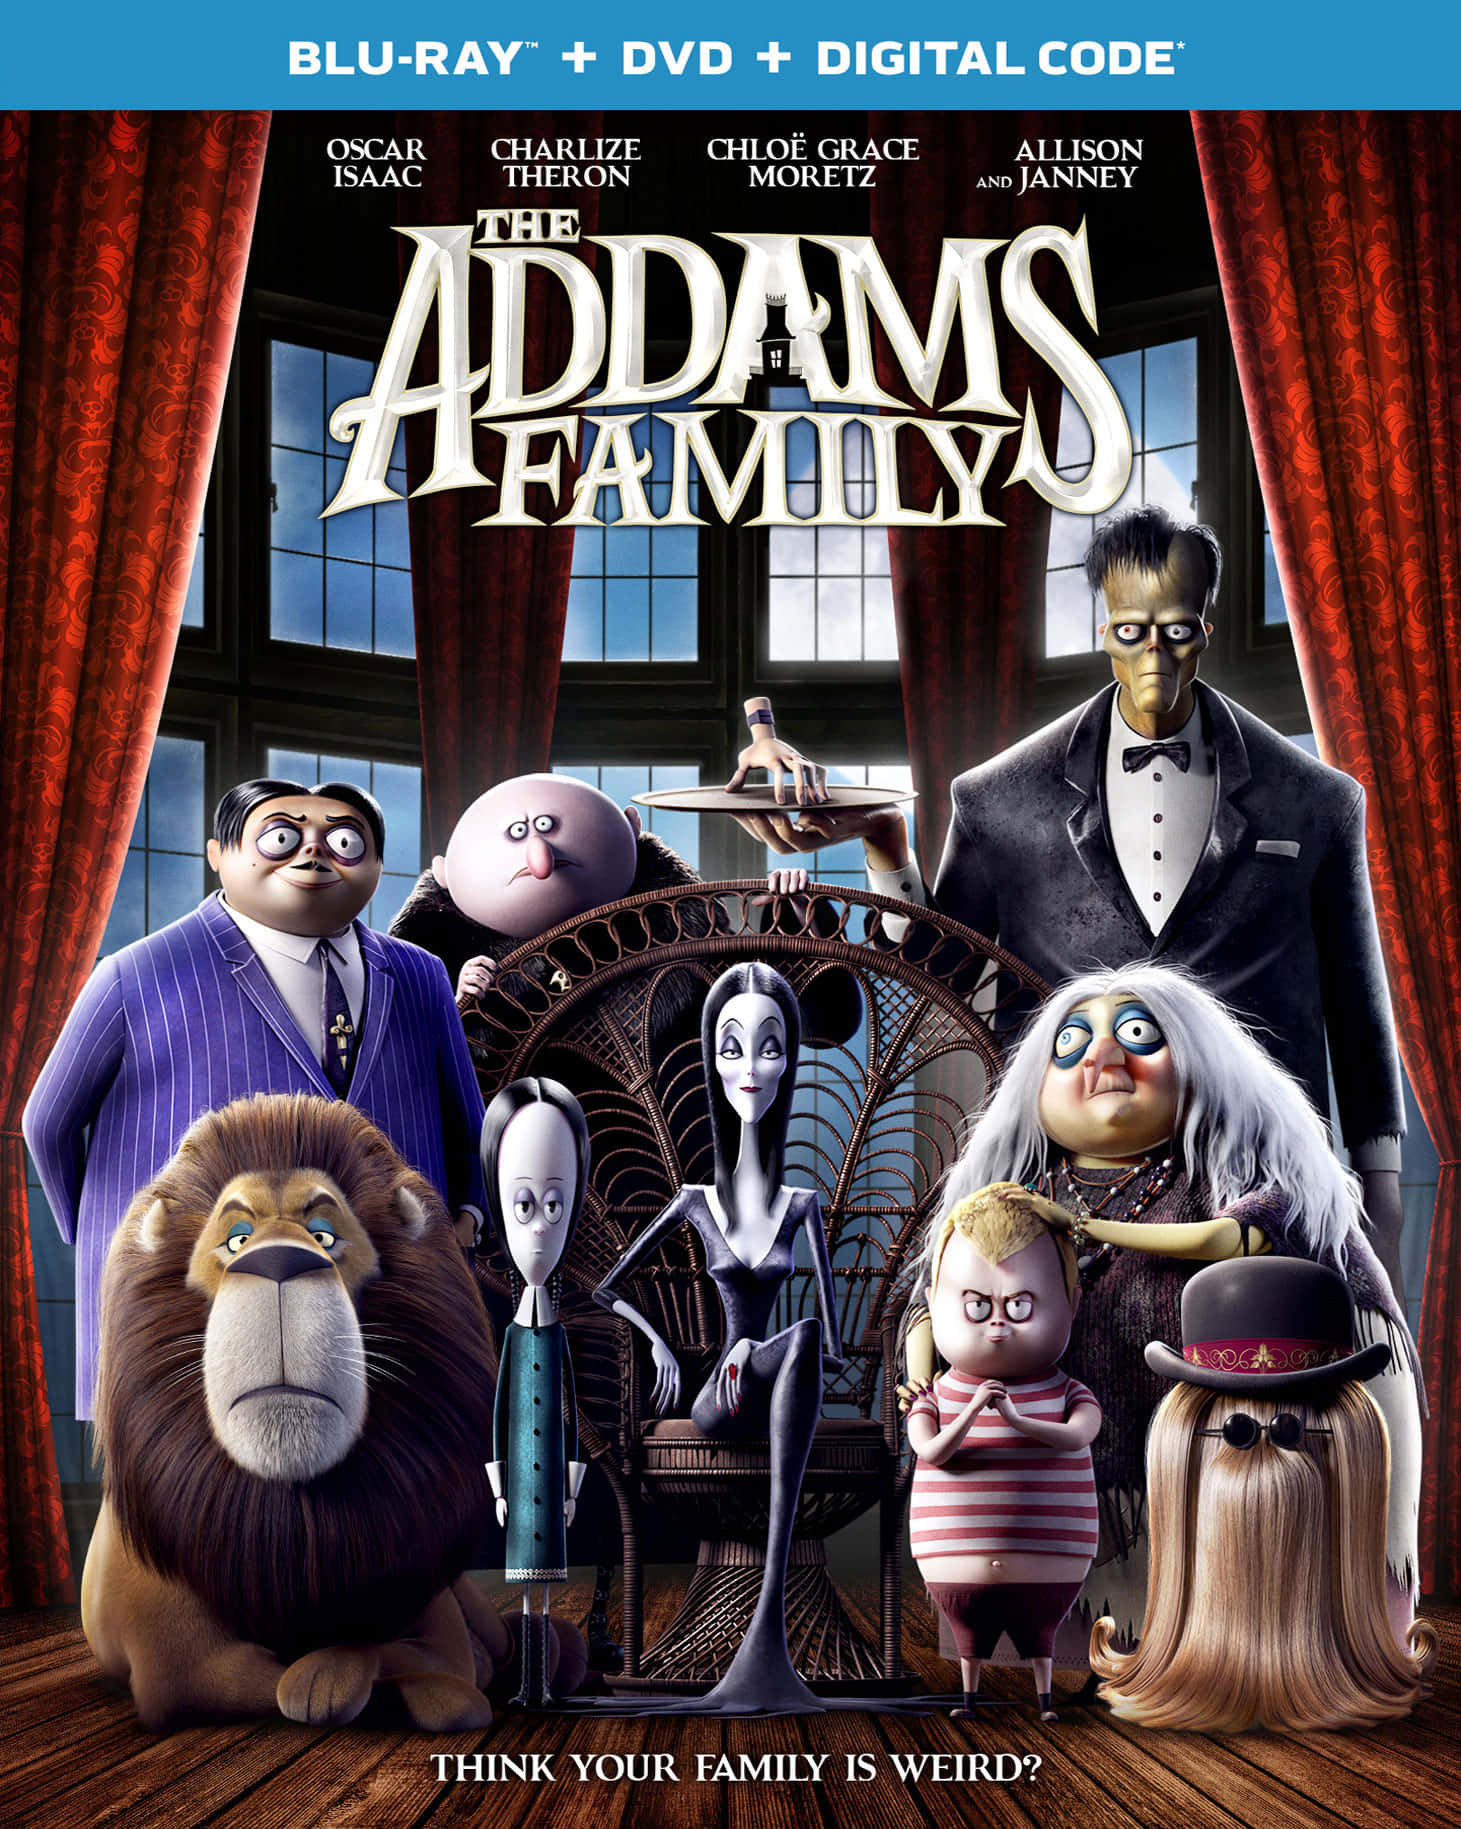 Lainquietante Y Extravagante Familia Addams!